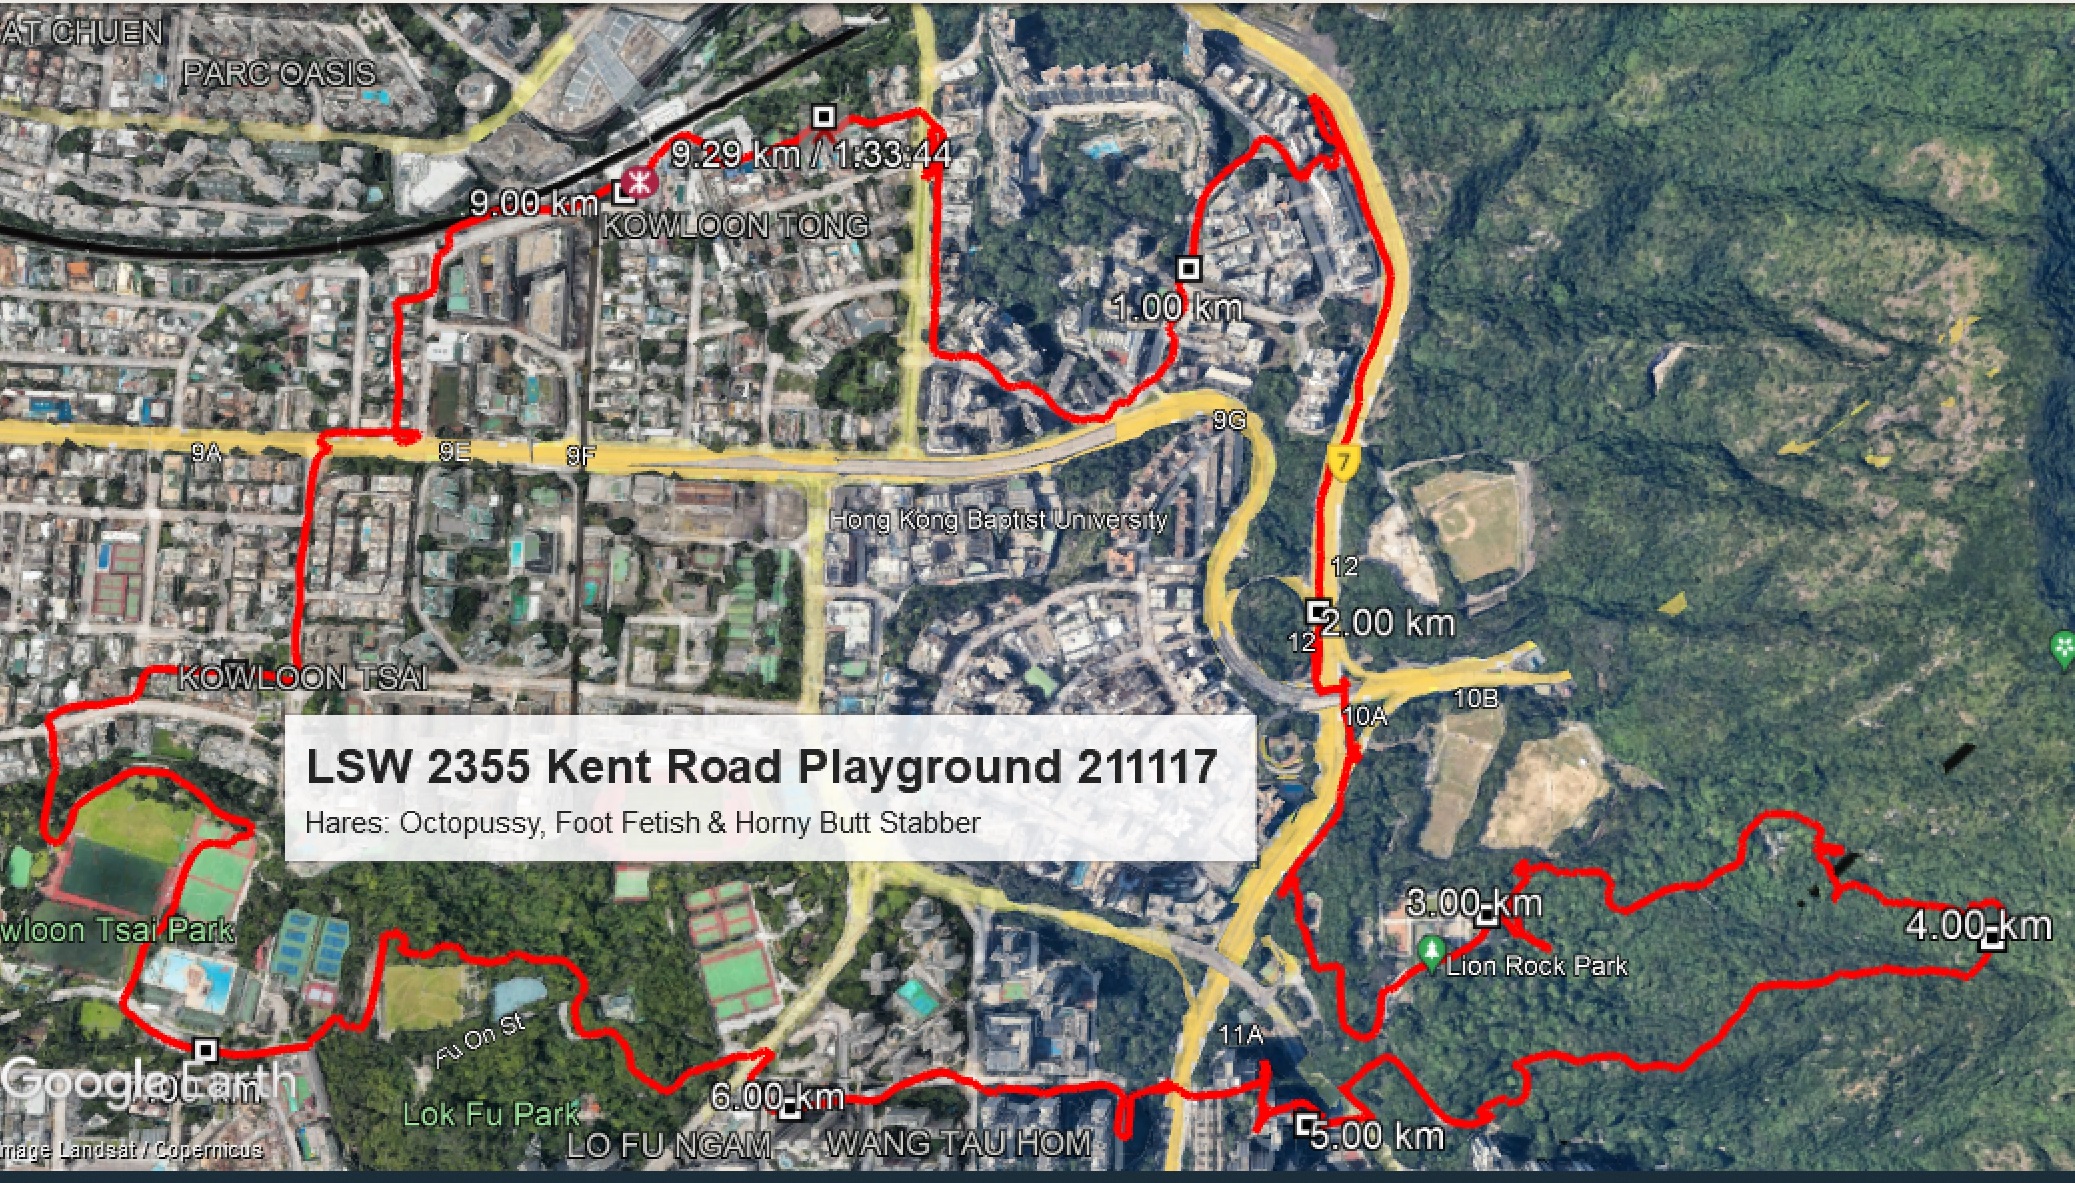 Kent Road Playground 211117 9.29km